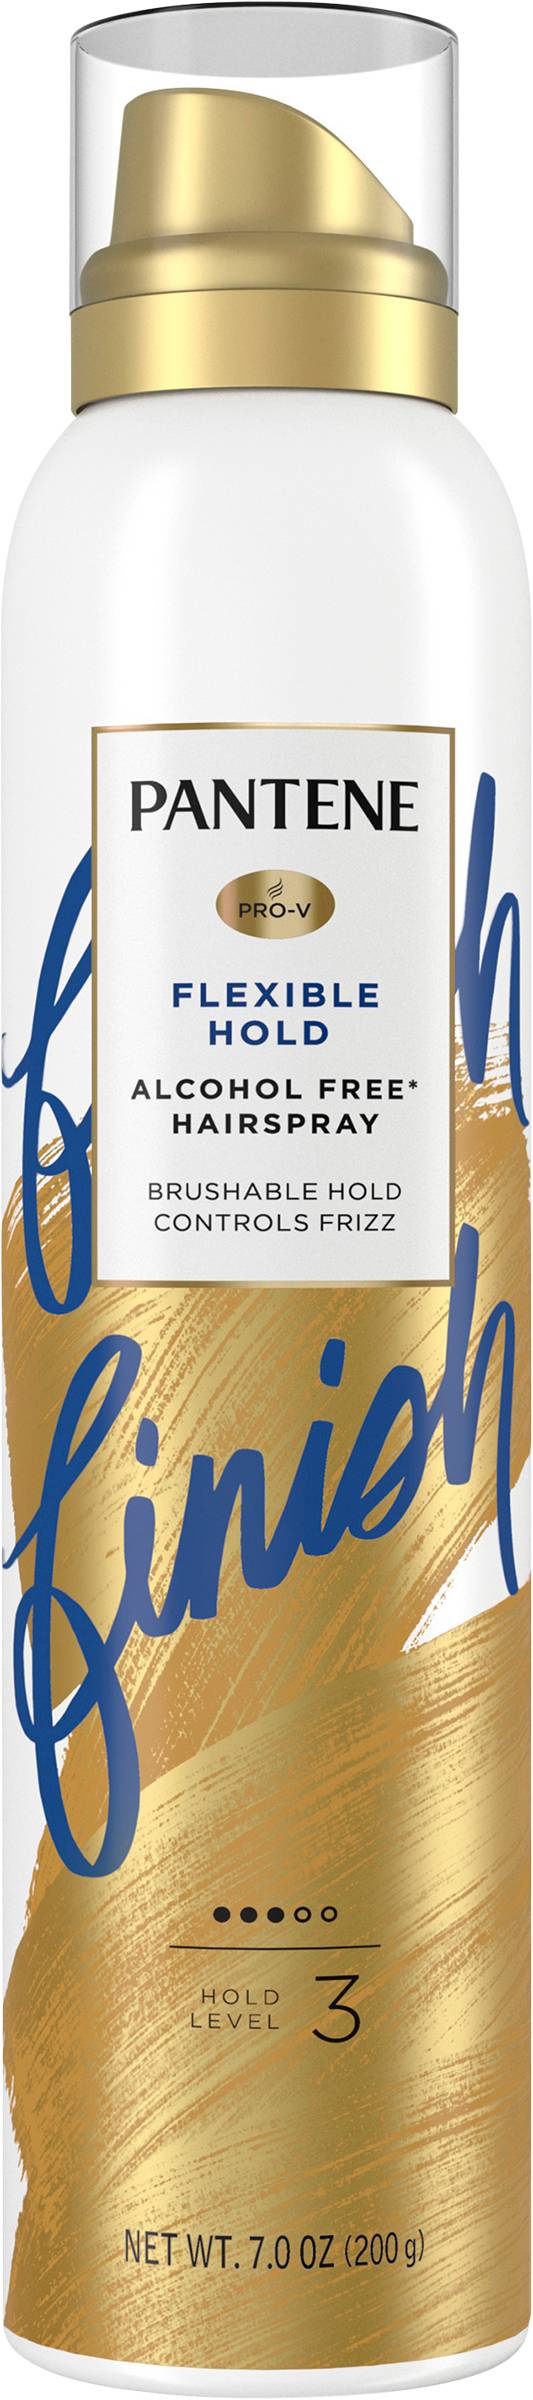 Pantene Pro-V Flexible Hold Hairspray